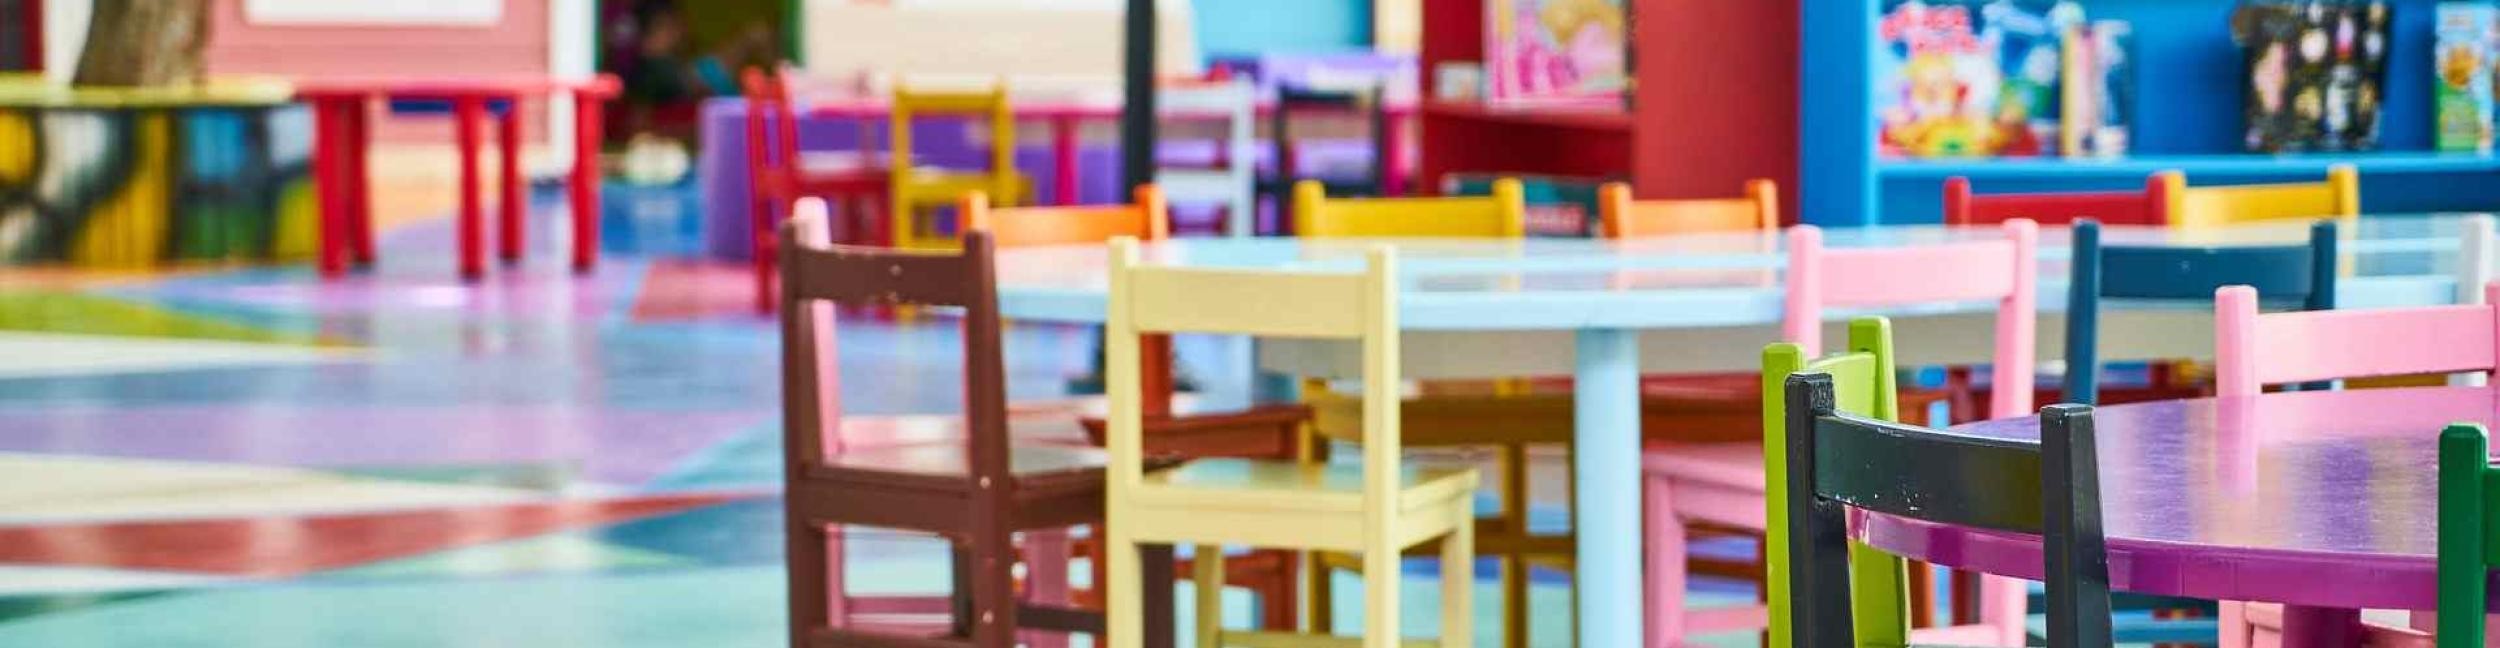 Tische und Stühle der Kinder im Kindergarten